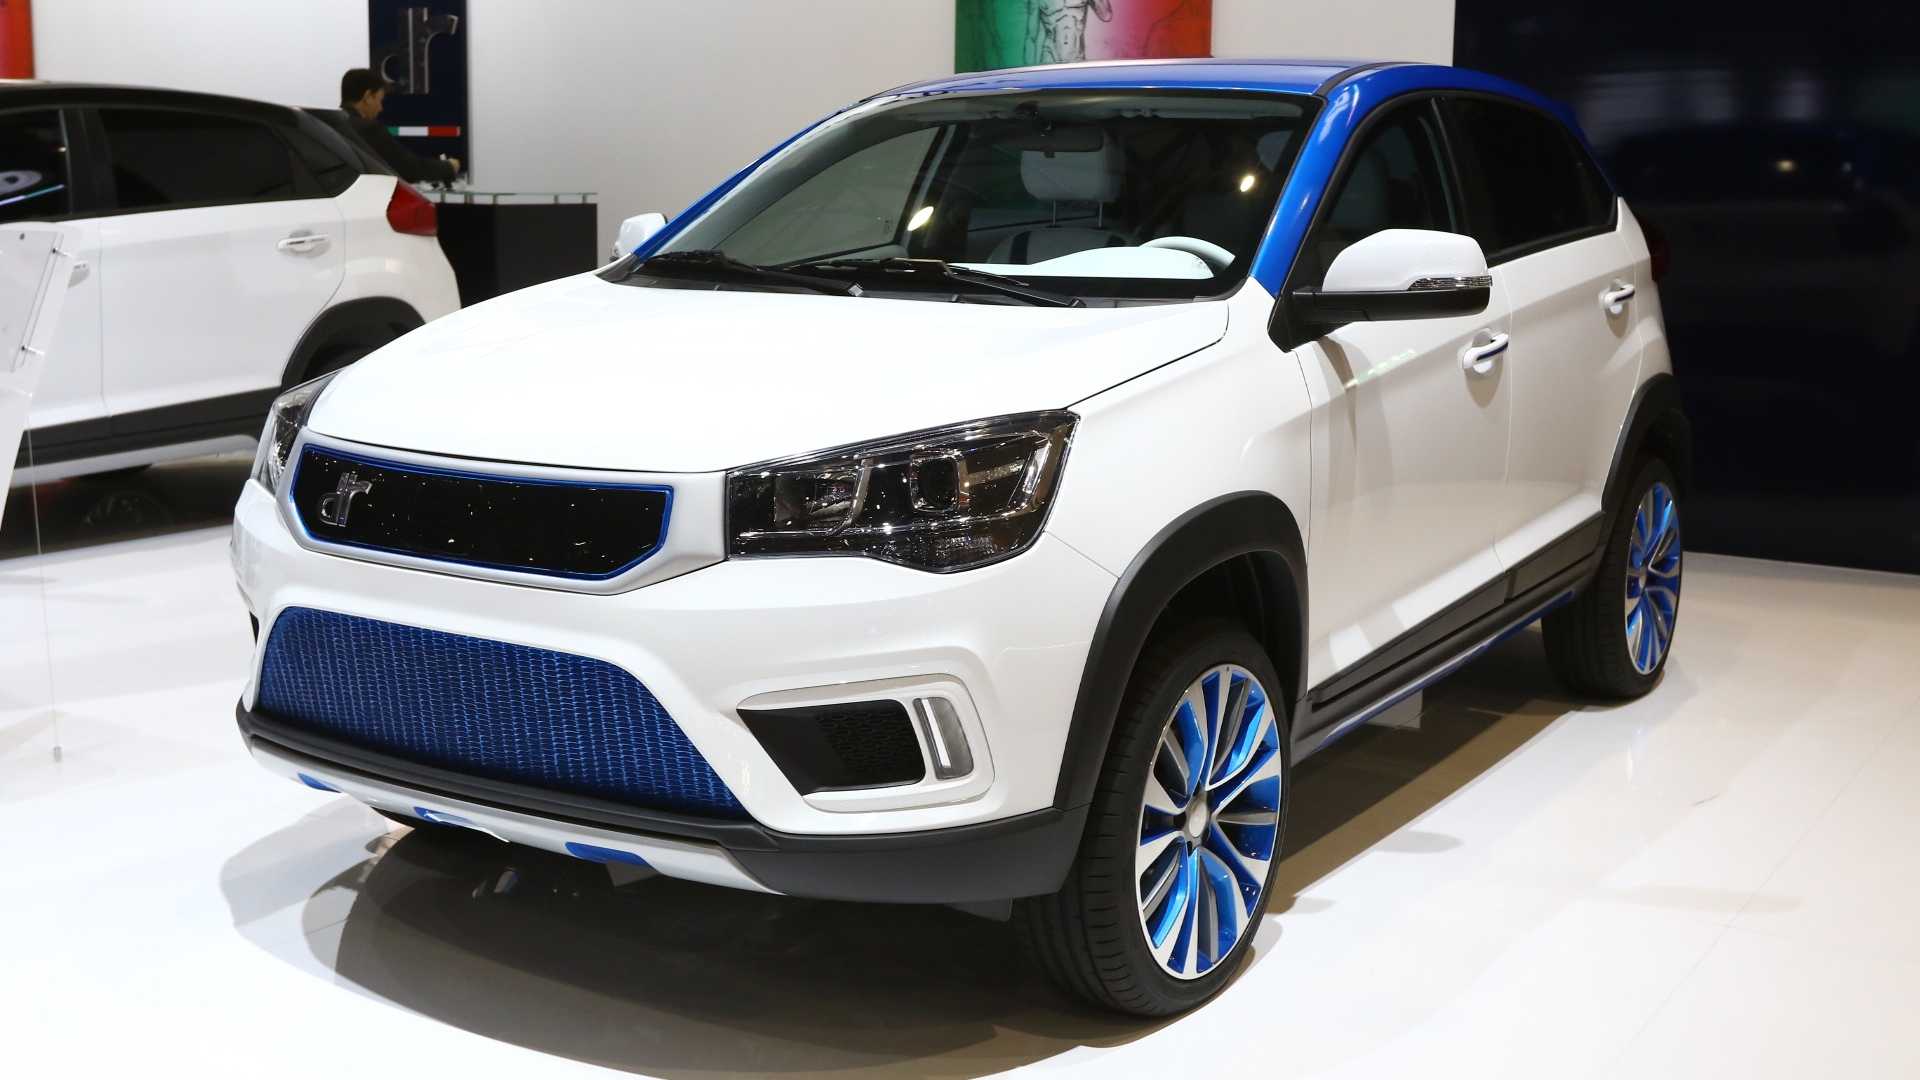 2-حضور محصولات چینی چری در نمایشگاه خودروی ژنو 2019